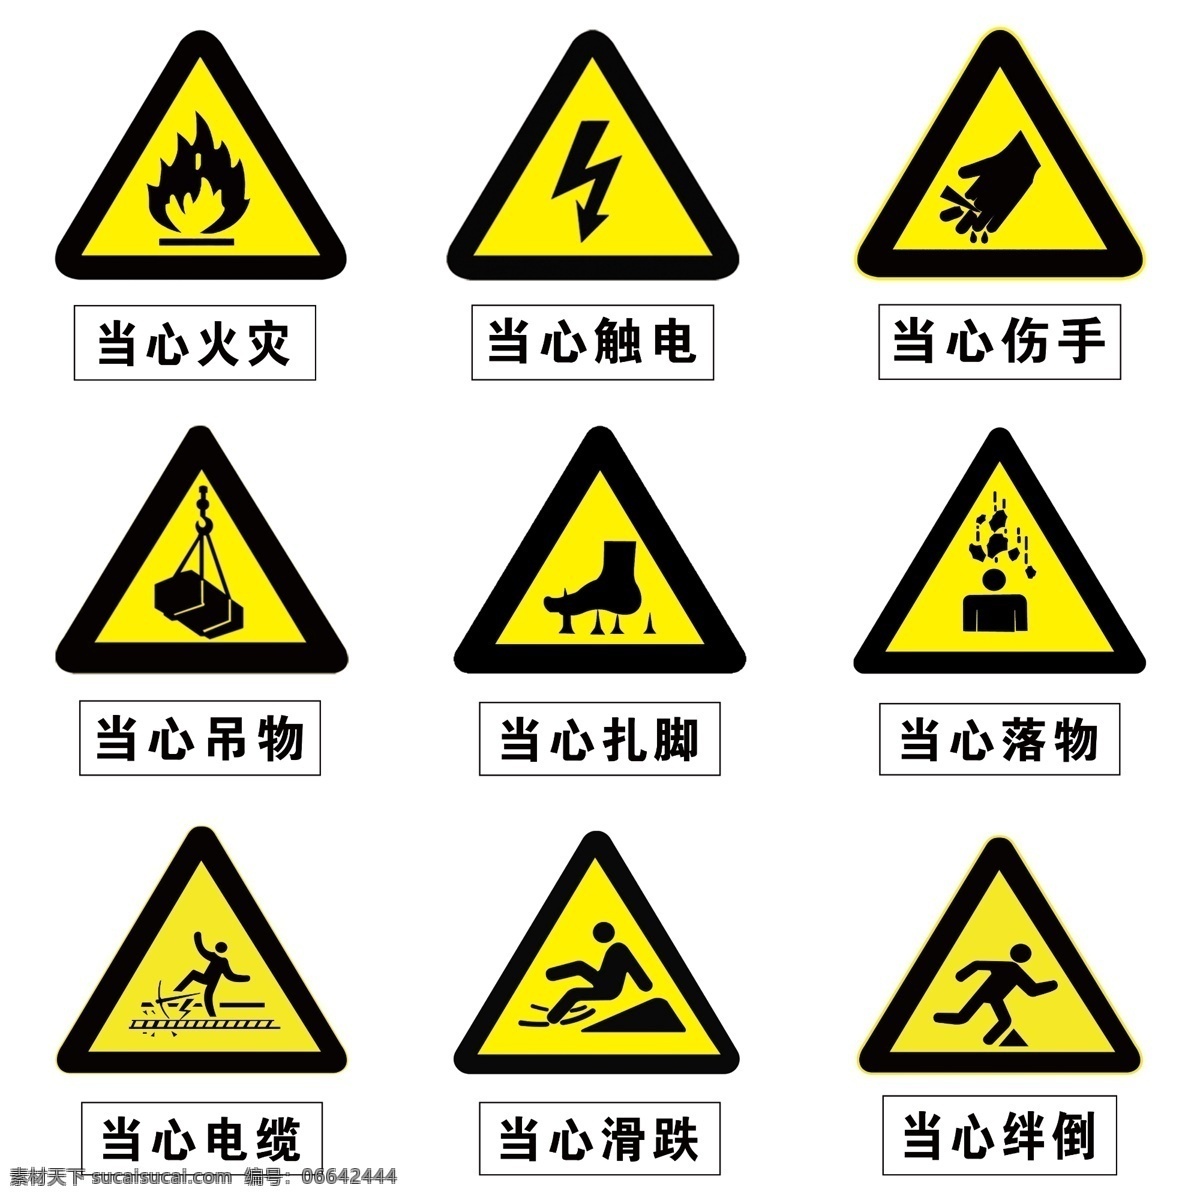 安全标志图片 安全标志 安全 标志 注意高温 当心爆炸 当心扎脚 当心触电 小心滑倒 分层